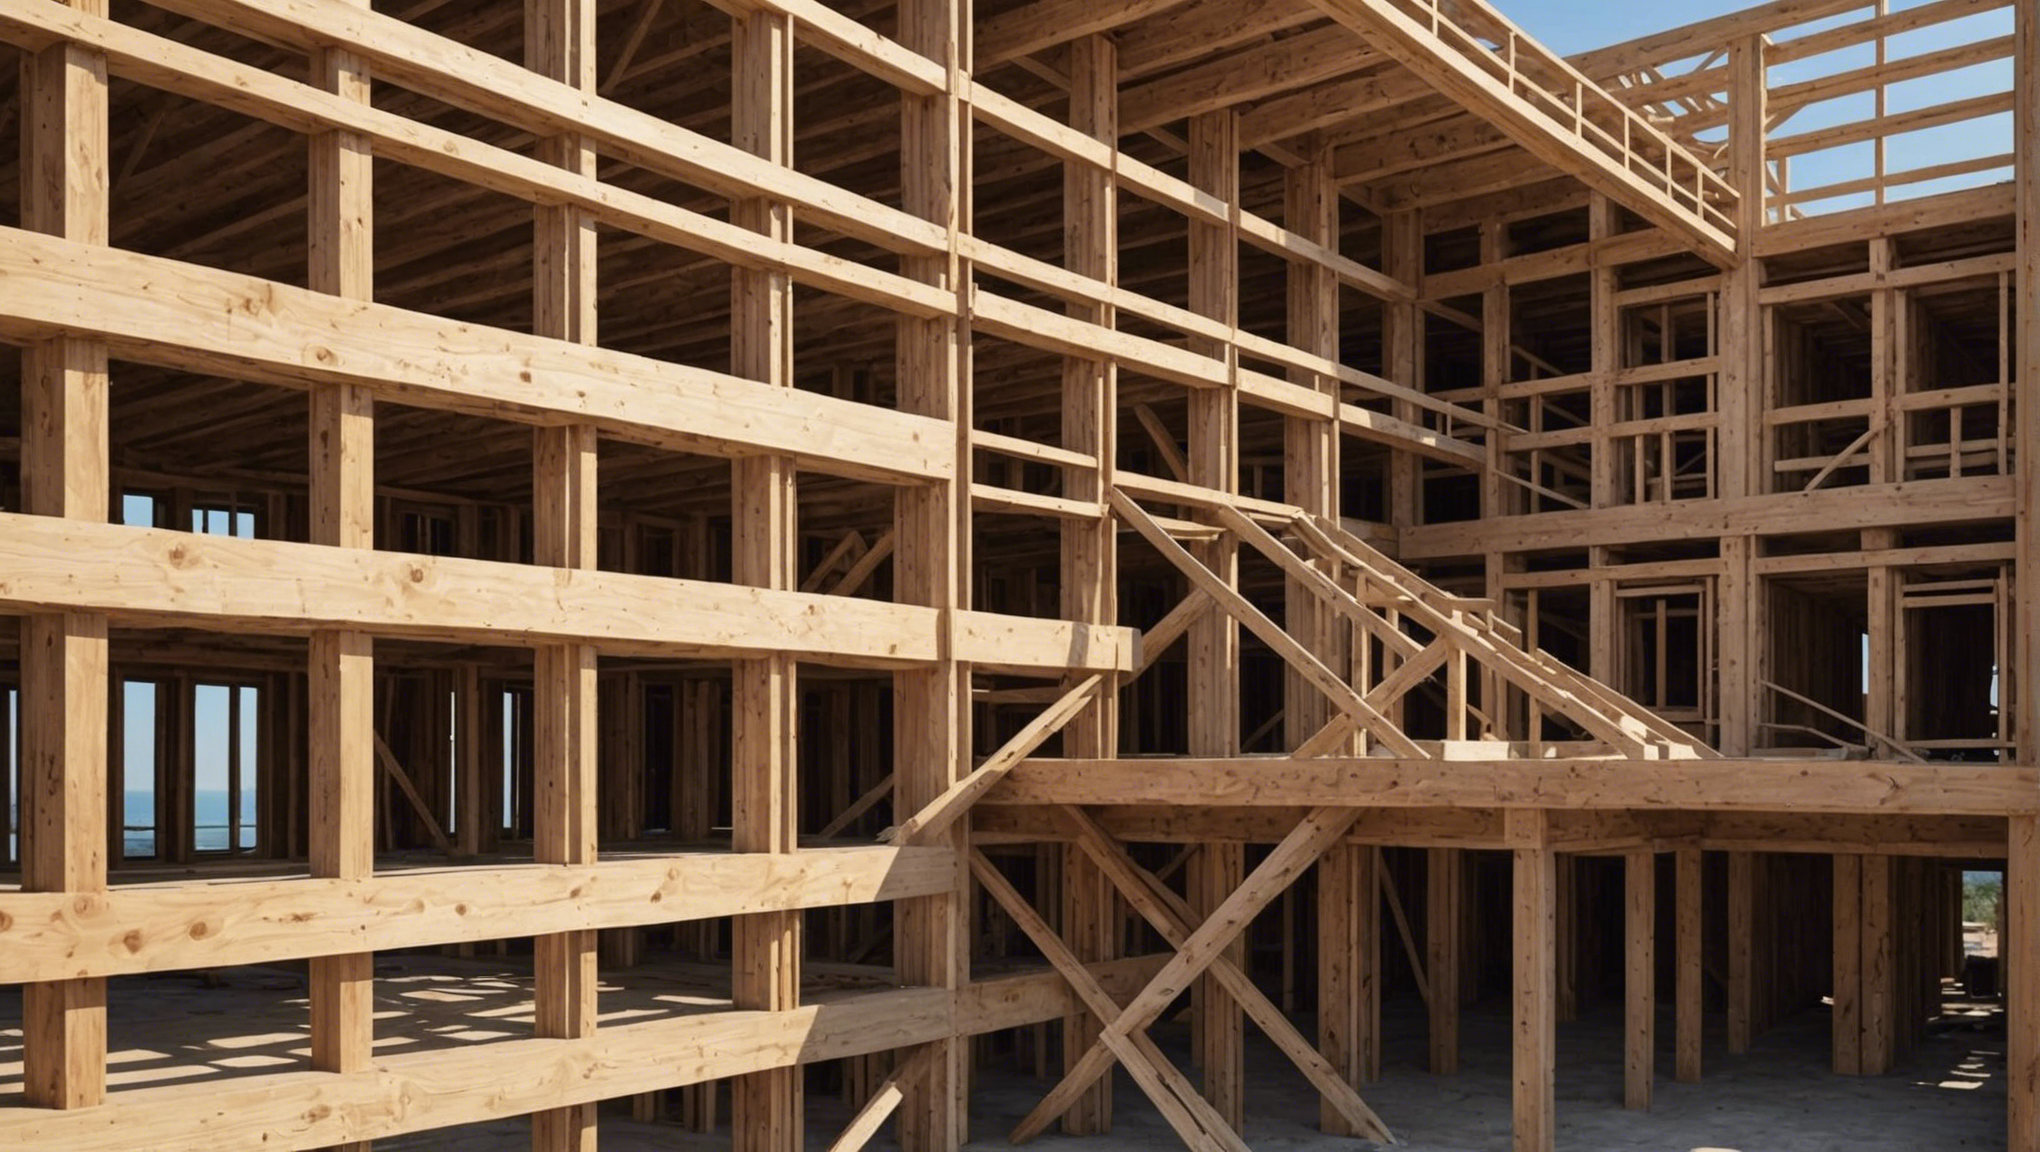 découvrez les avantages de la construction en bois pour votre projet et apprenez pourquoi choisir cette option pour des bâtiments durables et écologiques.